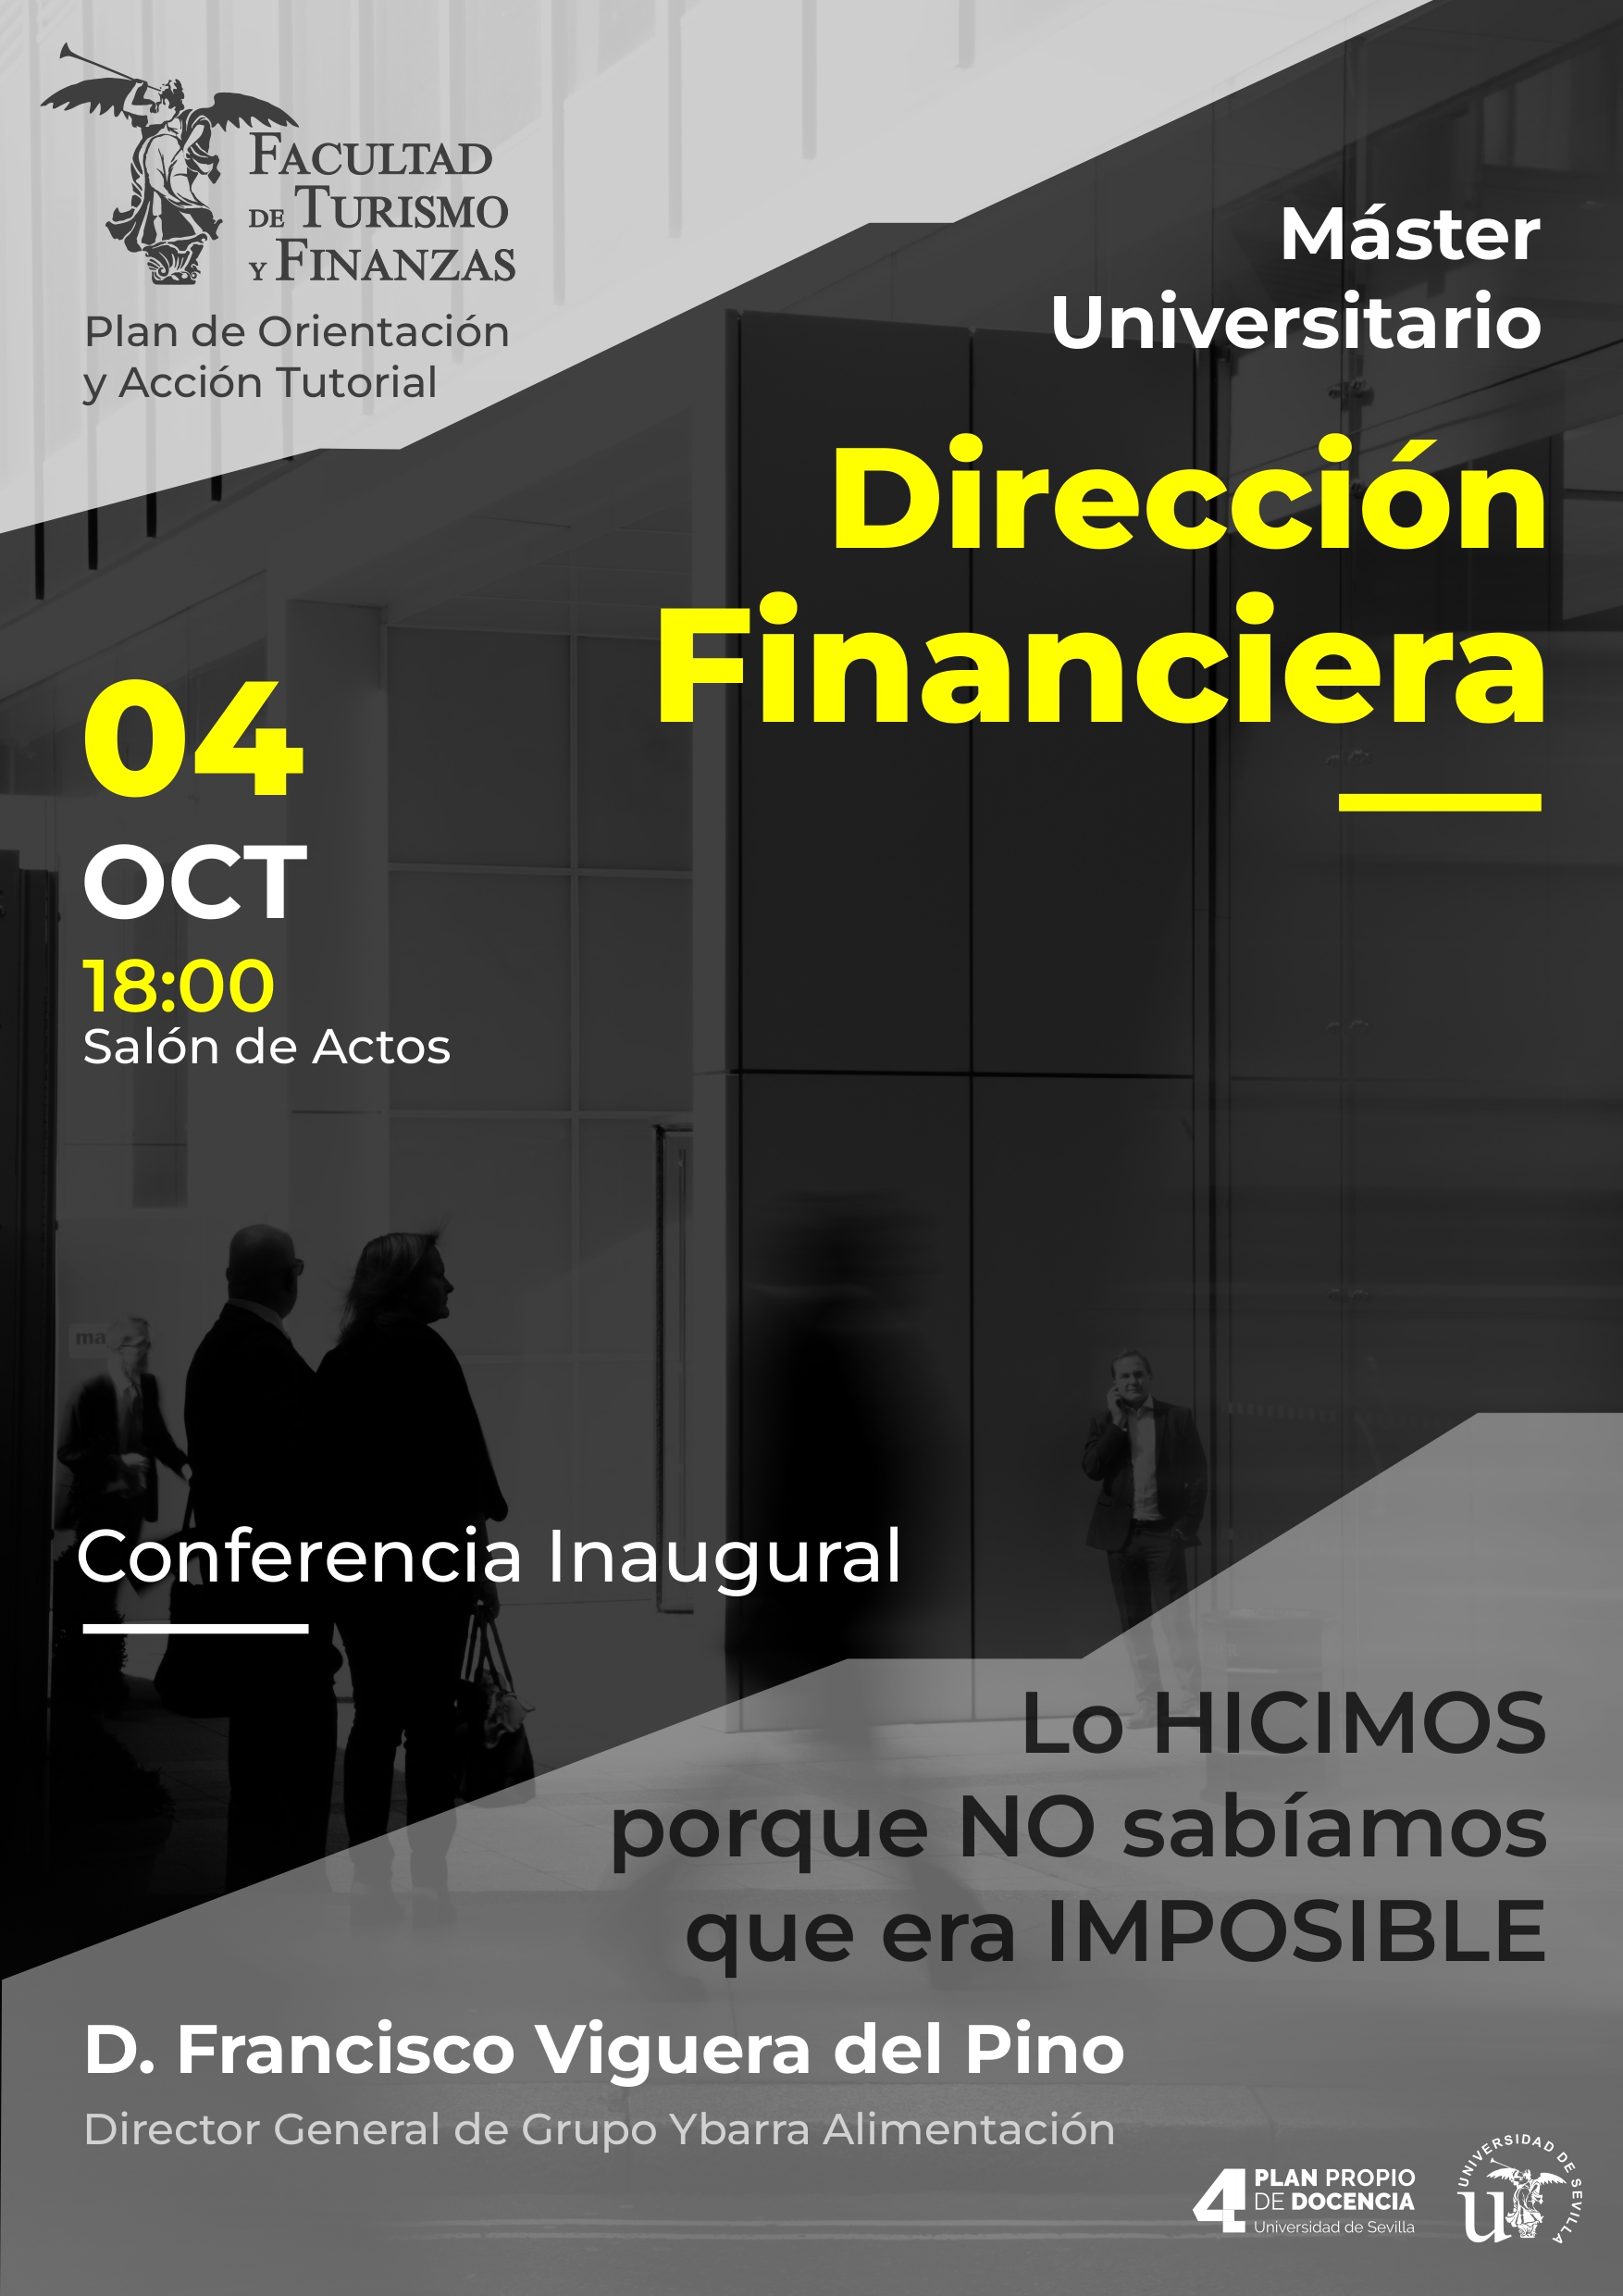 Máster Universitario en Dirección Financiera Conferencia inaugural Universidad de Sevilla